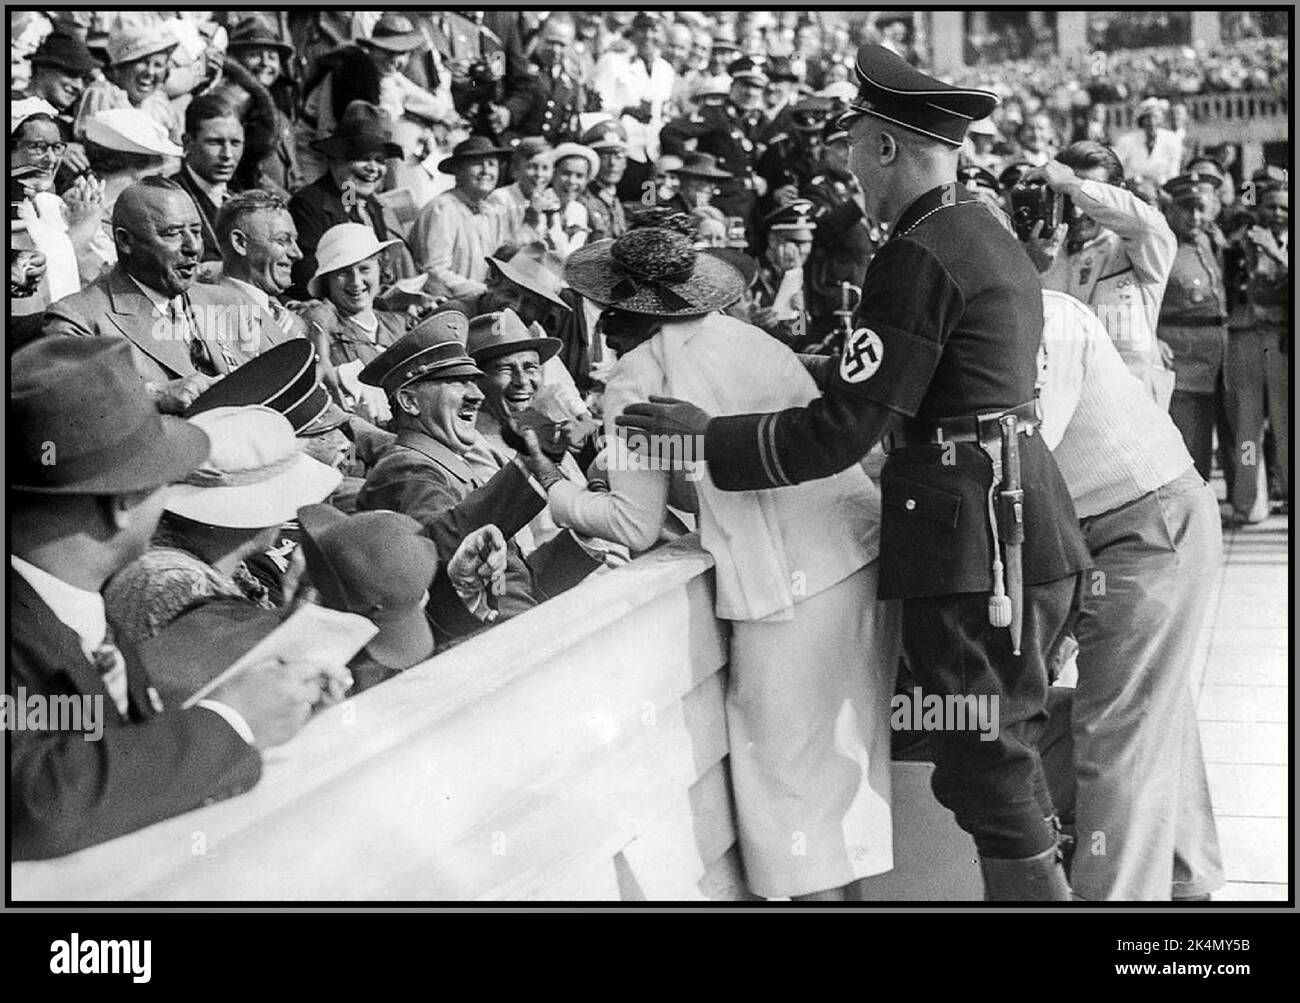 JEUX OLYMPIQUES DE BERLIN HITLER Adolf Hitler rit et réagit à une tentative de baiser de la femme américaine excitée aux Jeux olympiques de Berlin en Allemagne nazie, 1936. Banque D'Images